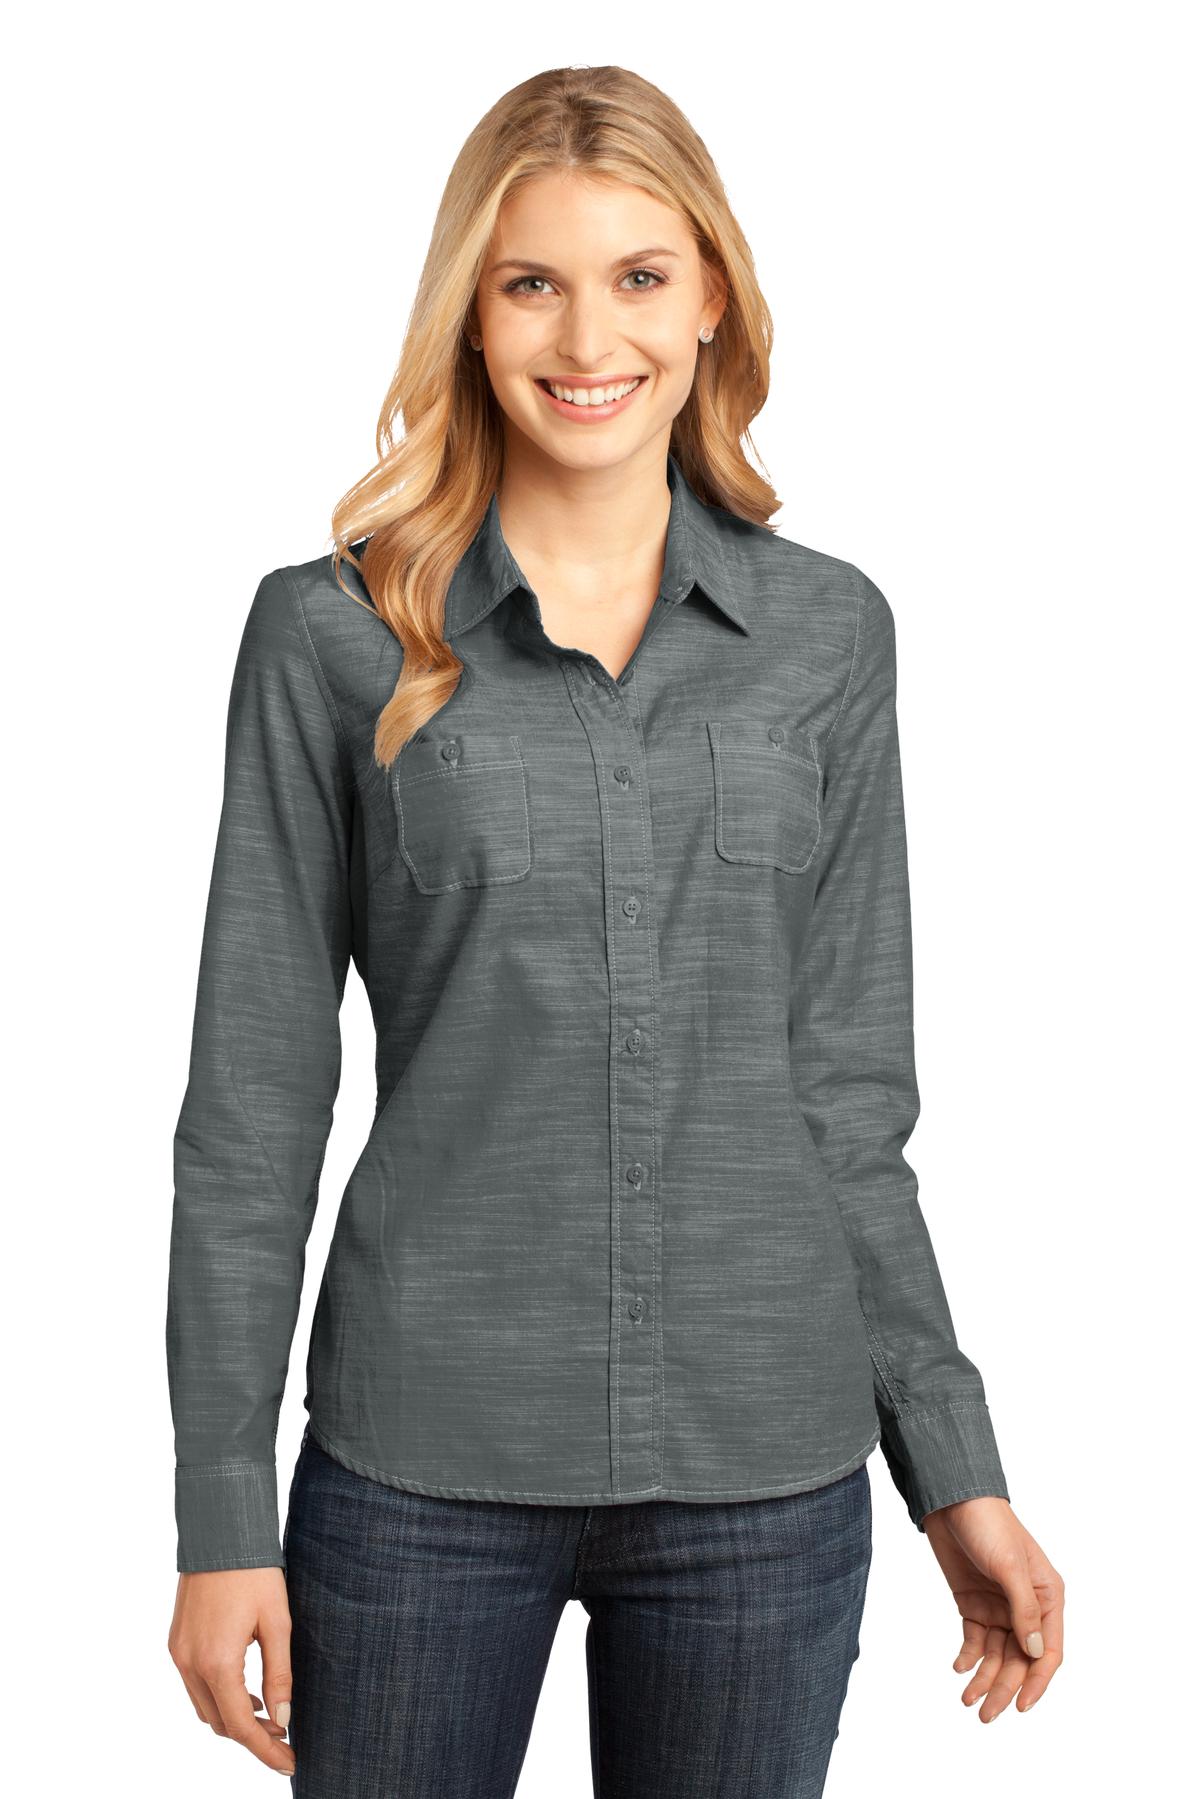 District Made Women's 100-Percent Cotton Long Sleeve Woven Shirt DM4800